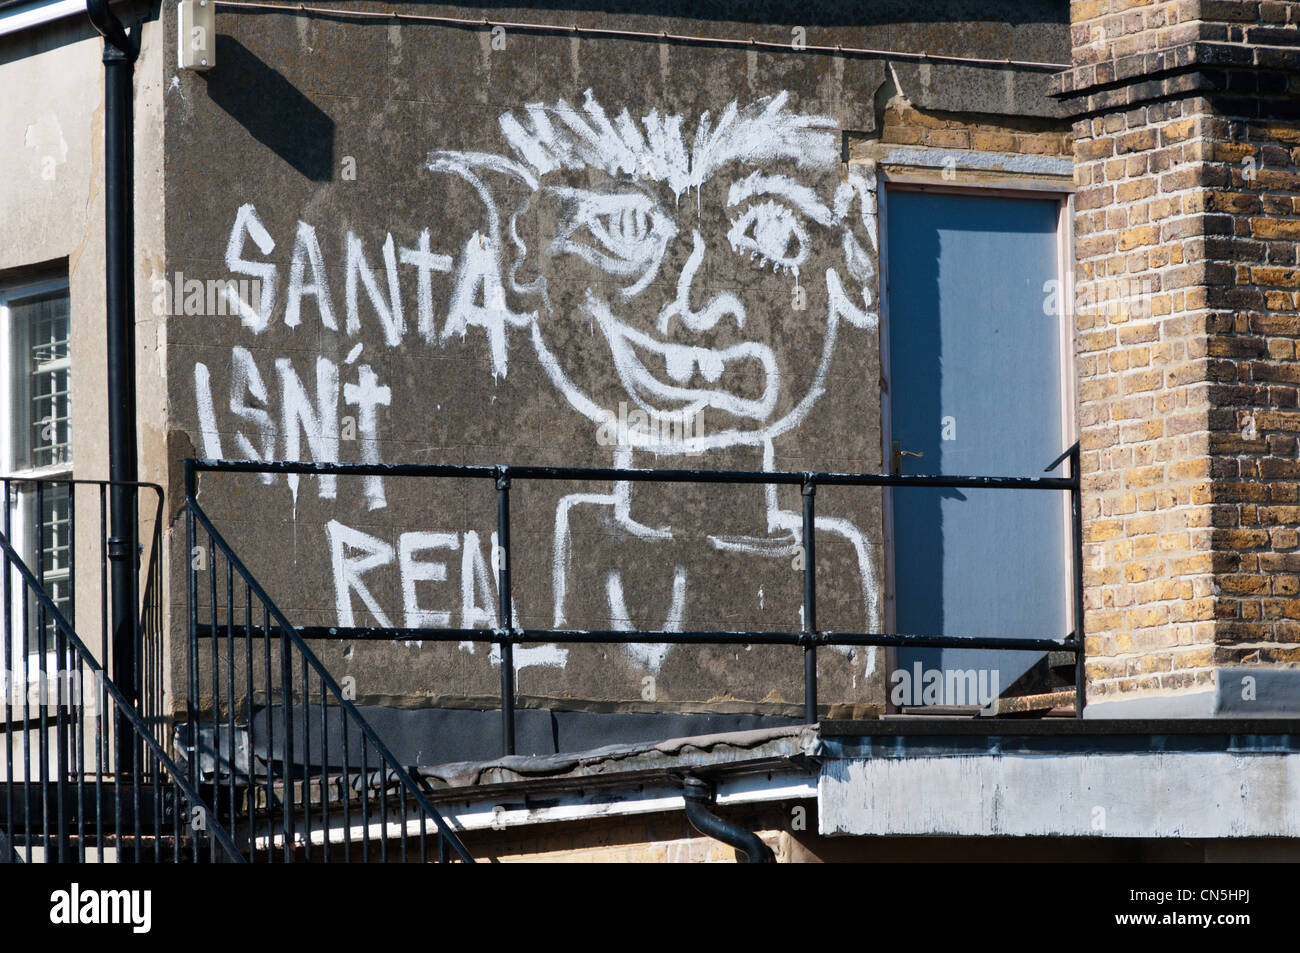 "Santa ist nicht real" Graffiti auf der Rückwand des Gebäudes gemalt. Stockfoto